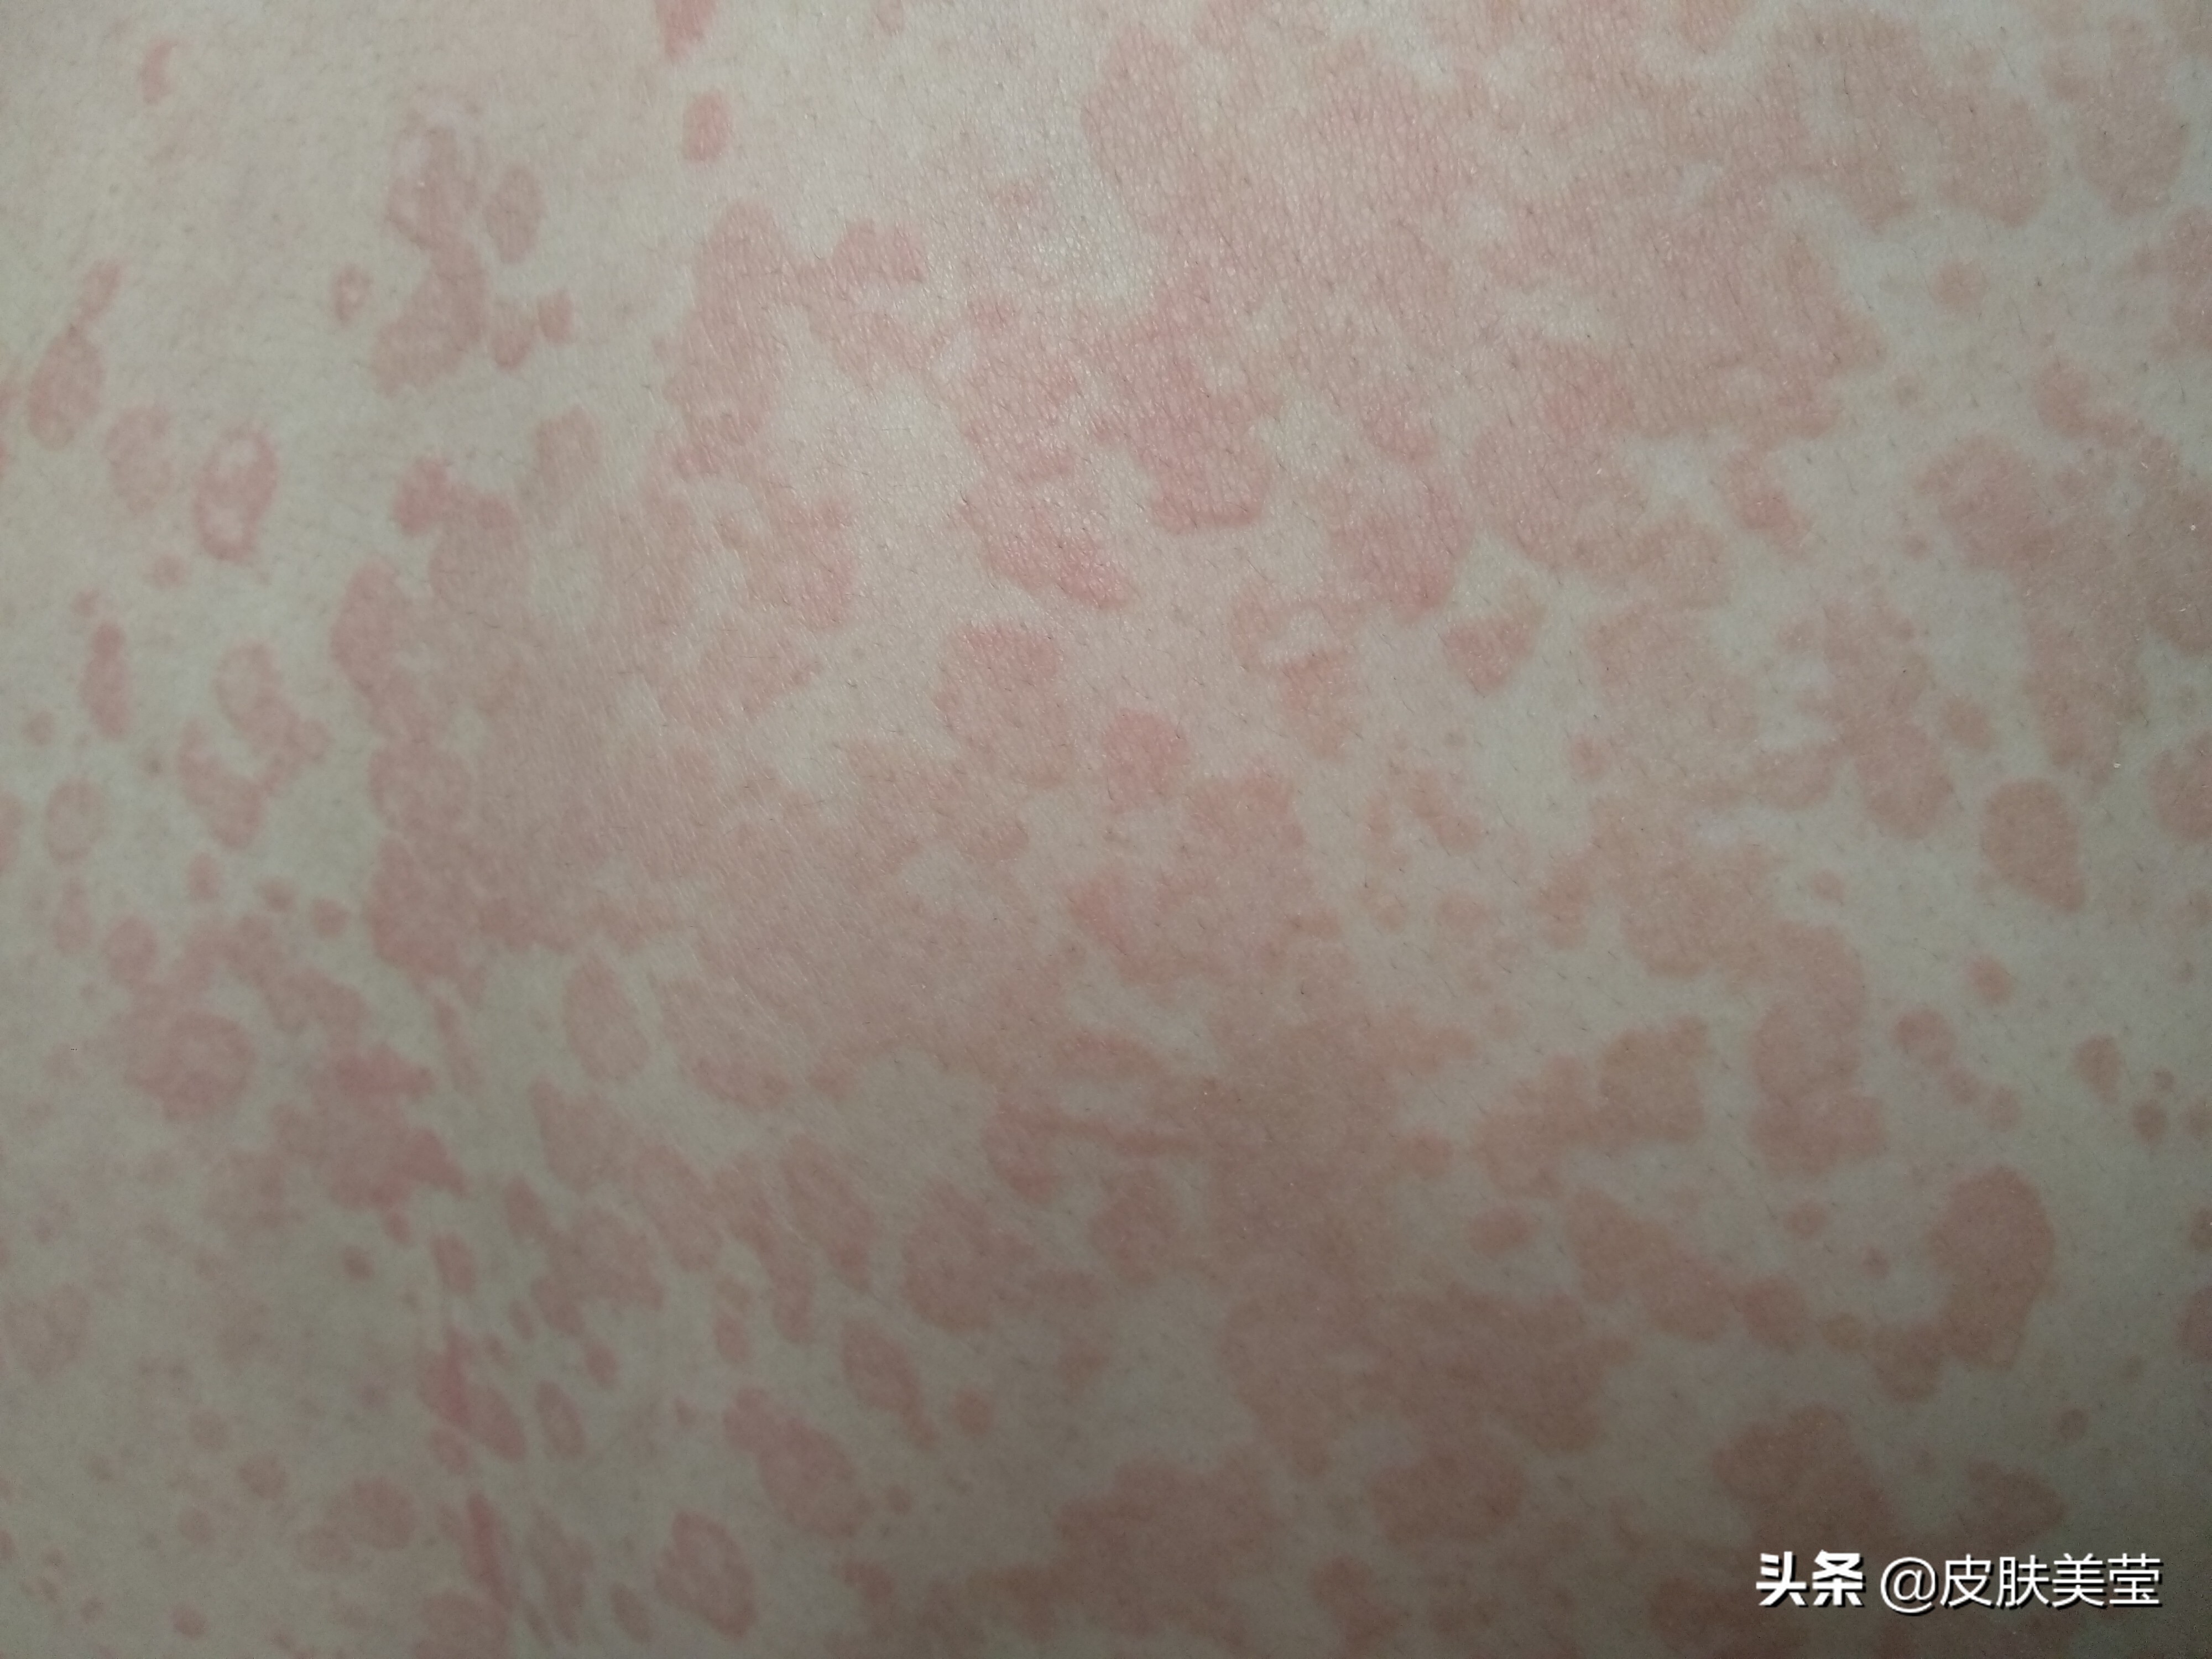 皮膚科 | 小心汗斑近你身 | 鄭惠文醫師Dr.ViVi | 安瑟美皮膚科